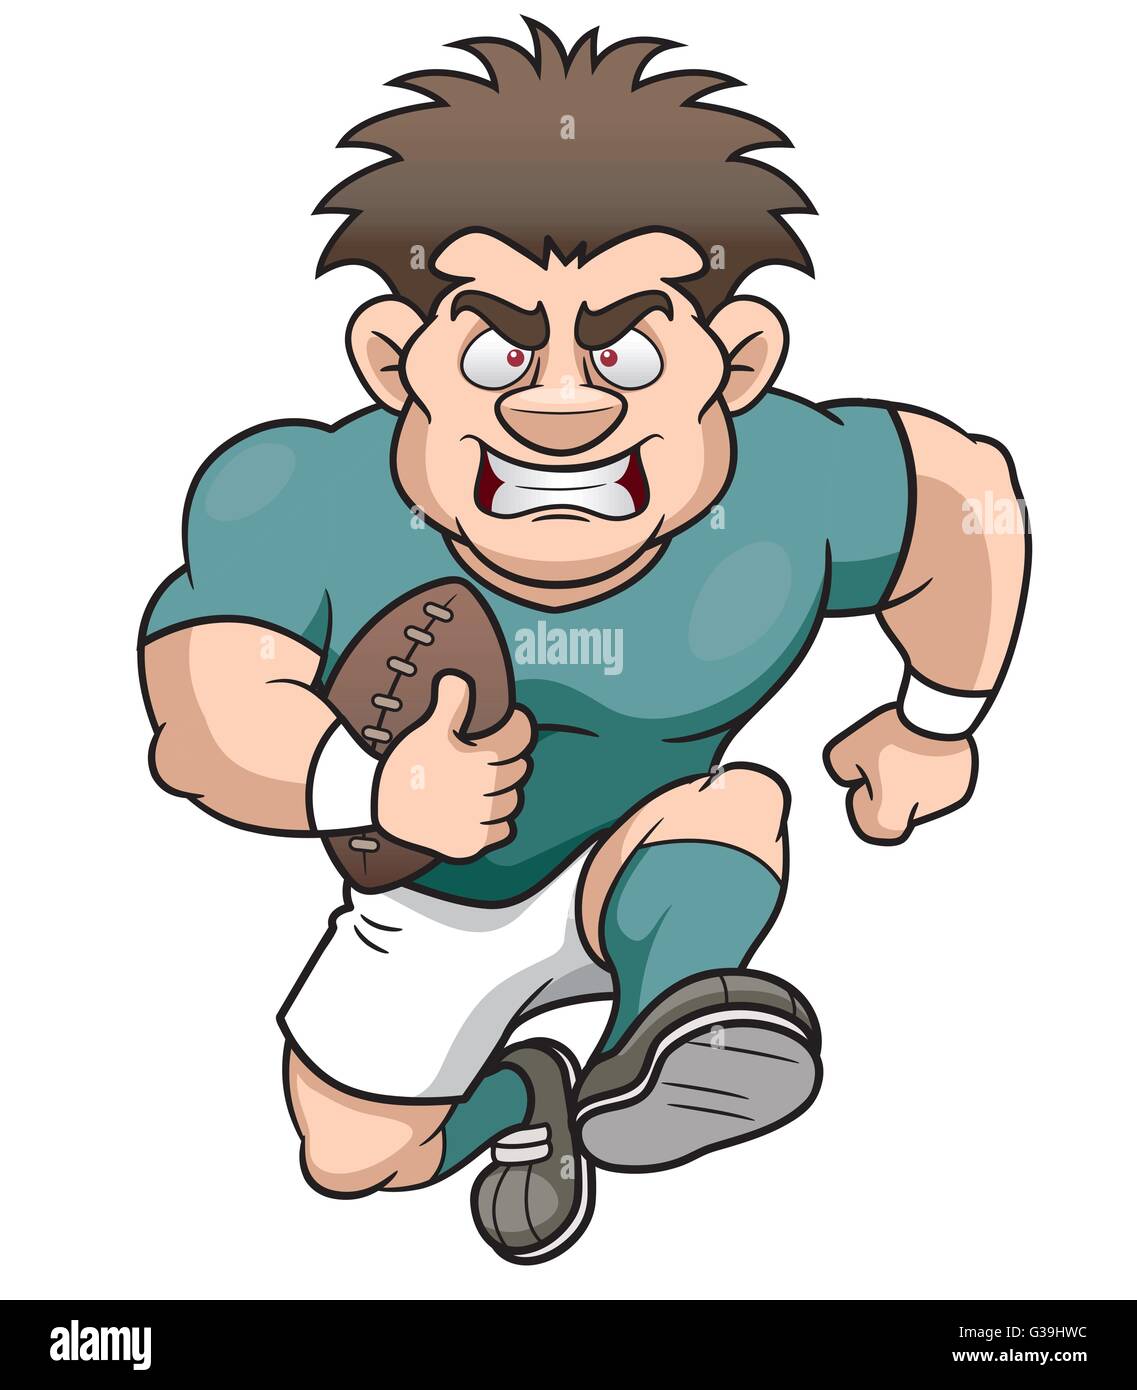 Ilustración Vectorial De Dibujos Animados Jugador De Rugby Imagen Vector De Stock Alamy 7557